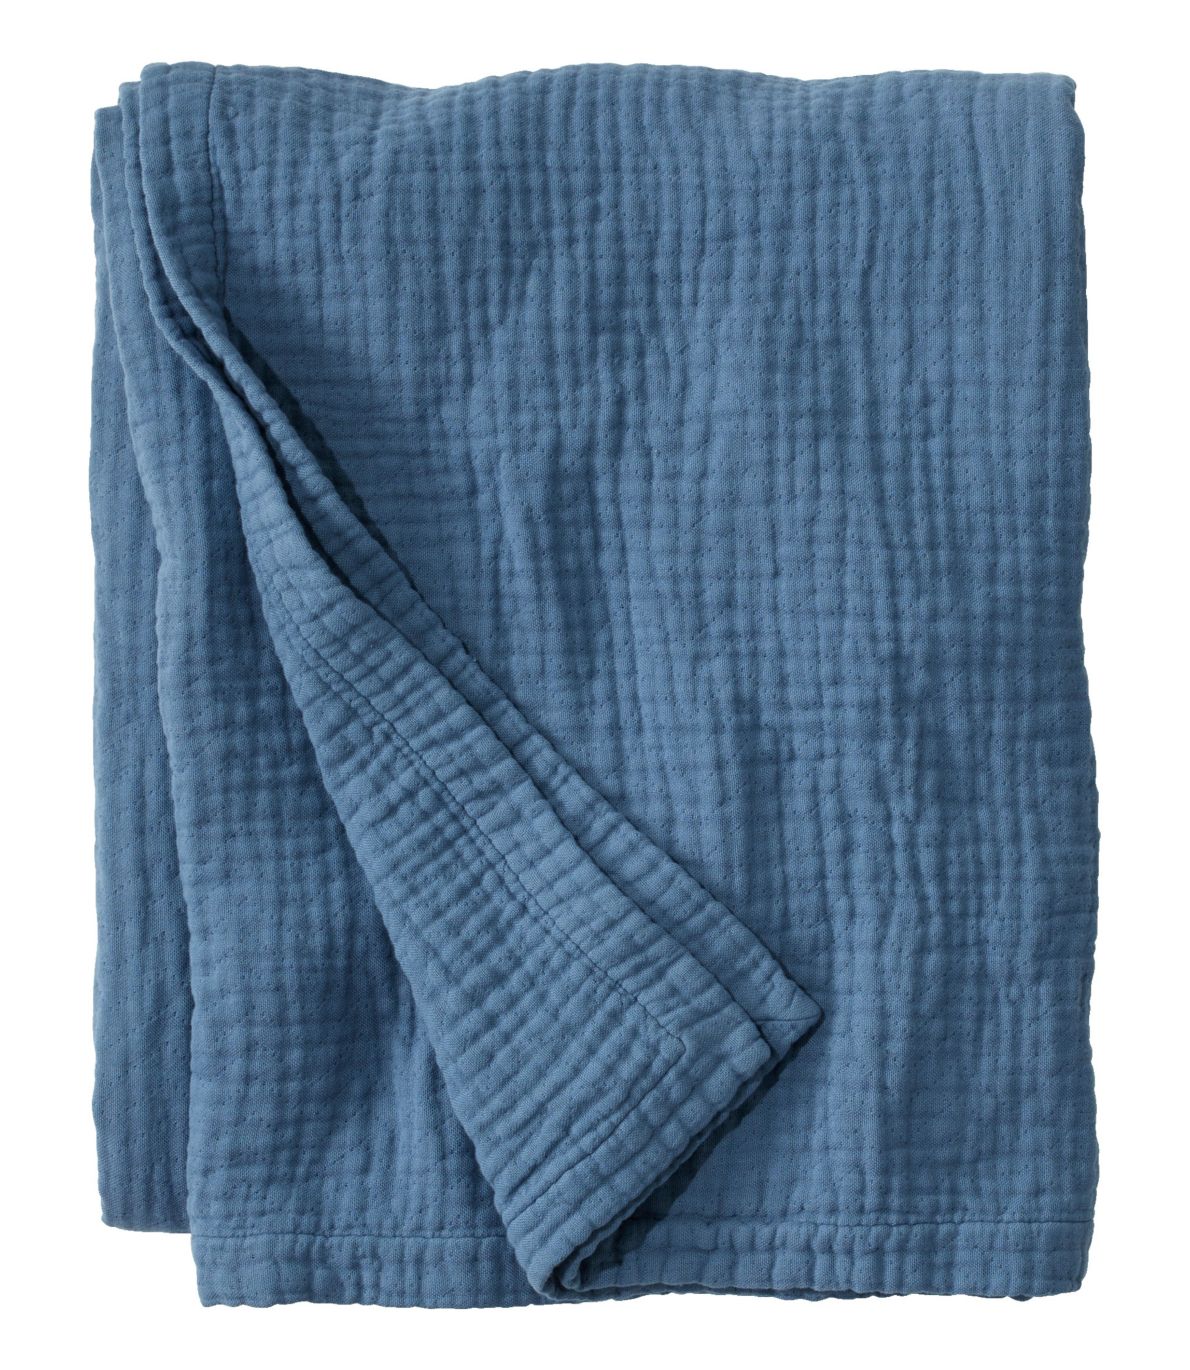 Lightweight Cotton Gauze Blanket